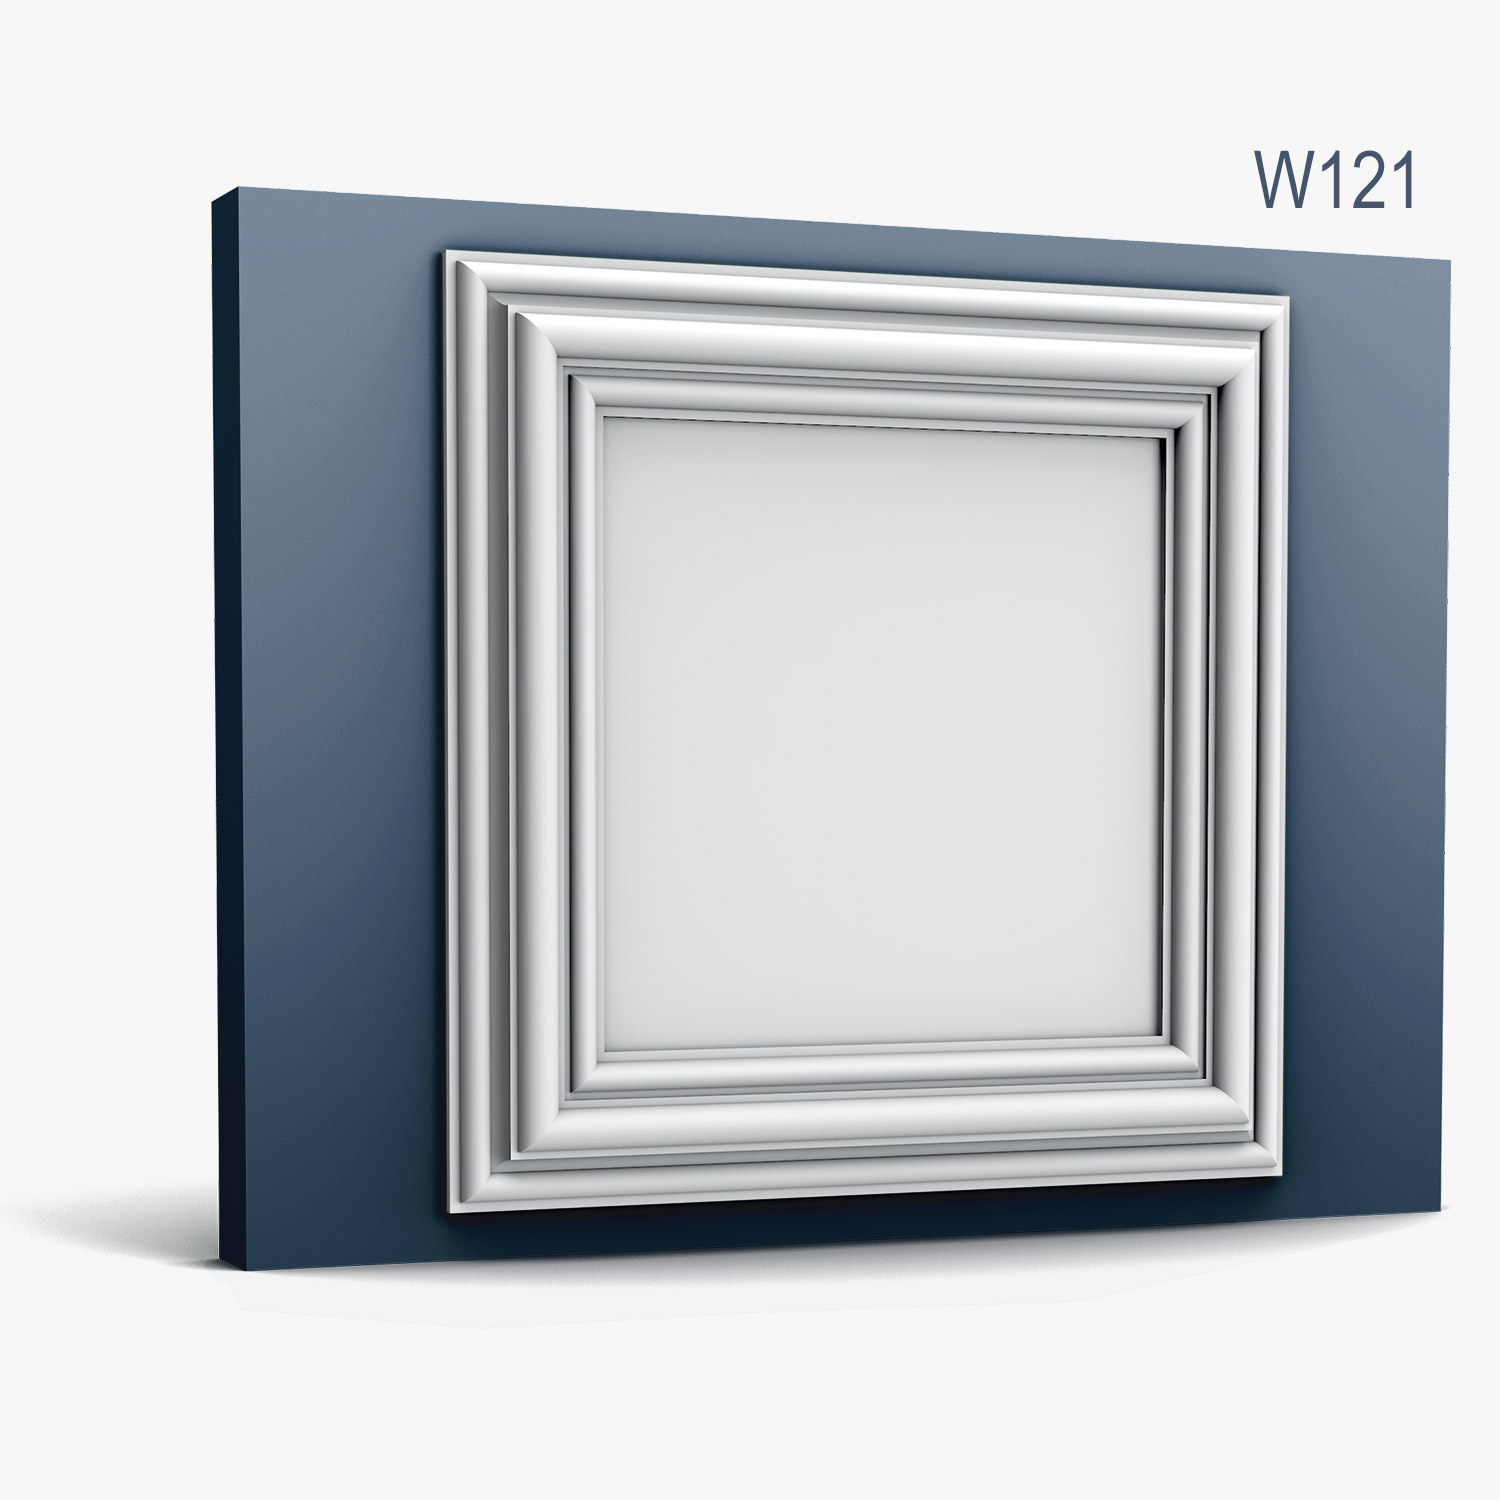 Panel Modern W121, Dimensiuni: 50 X 50 X 3.2 cm, Orac Decor Orac Decor